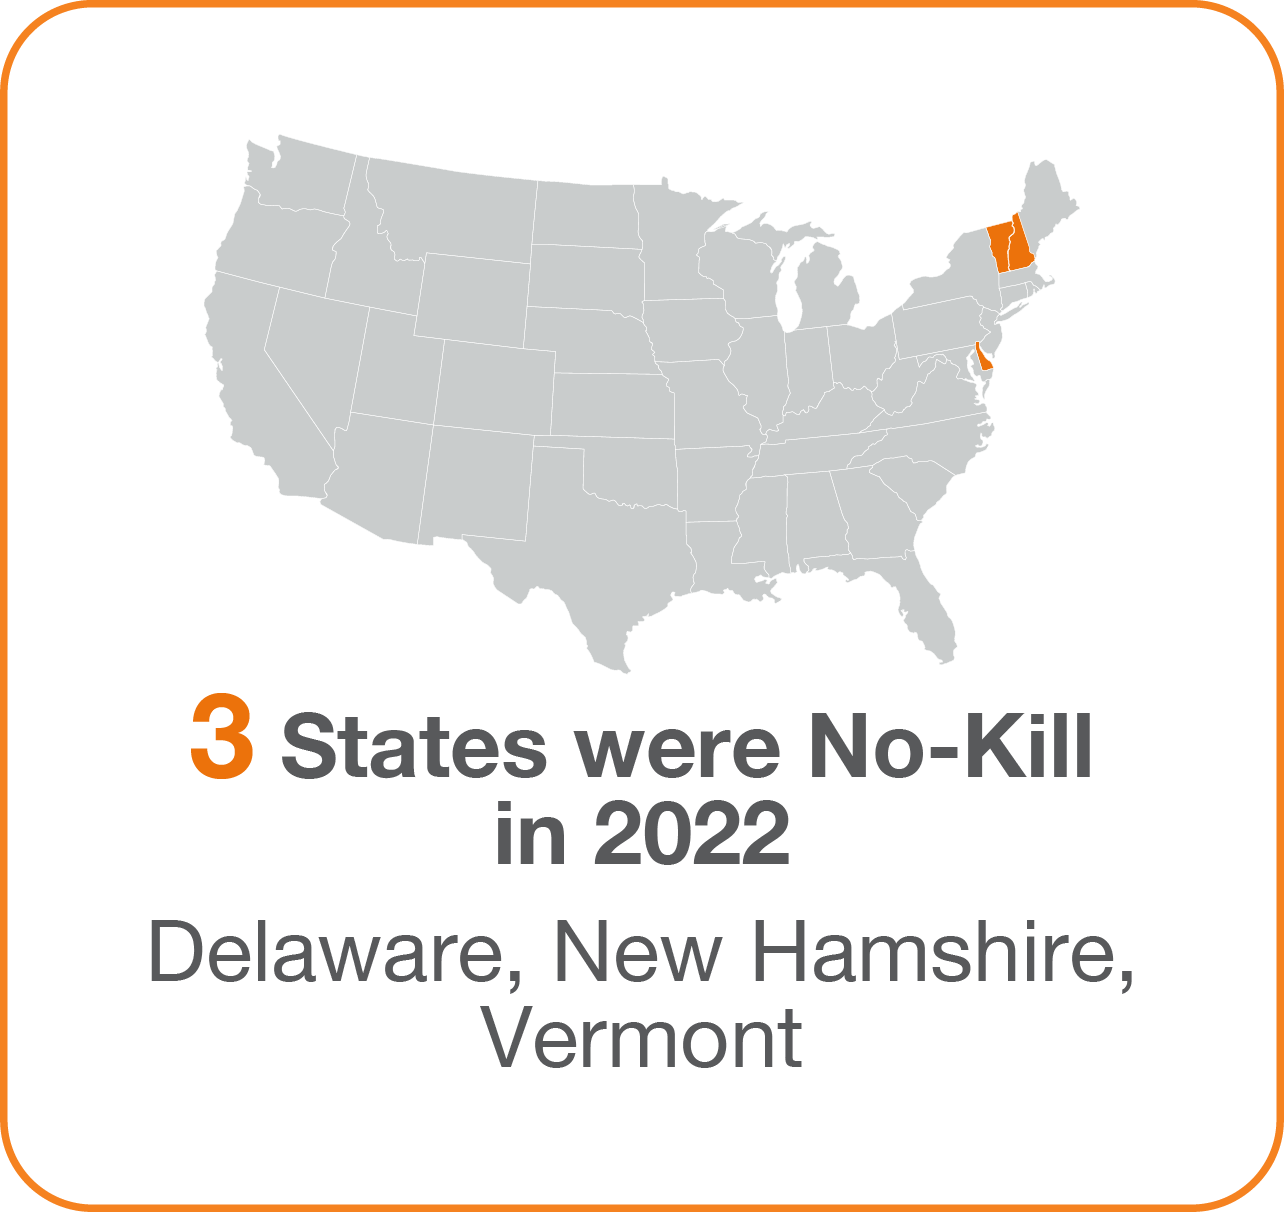 3 states were no kill in 2022 graphic